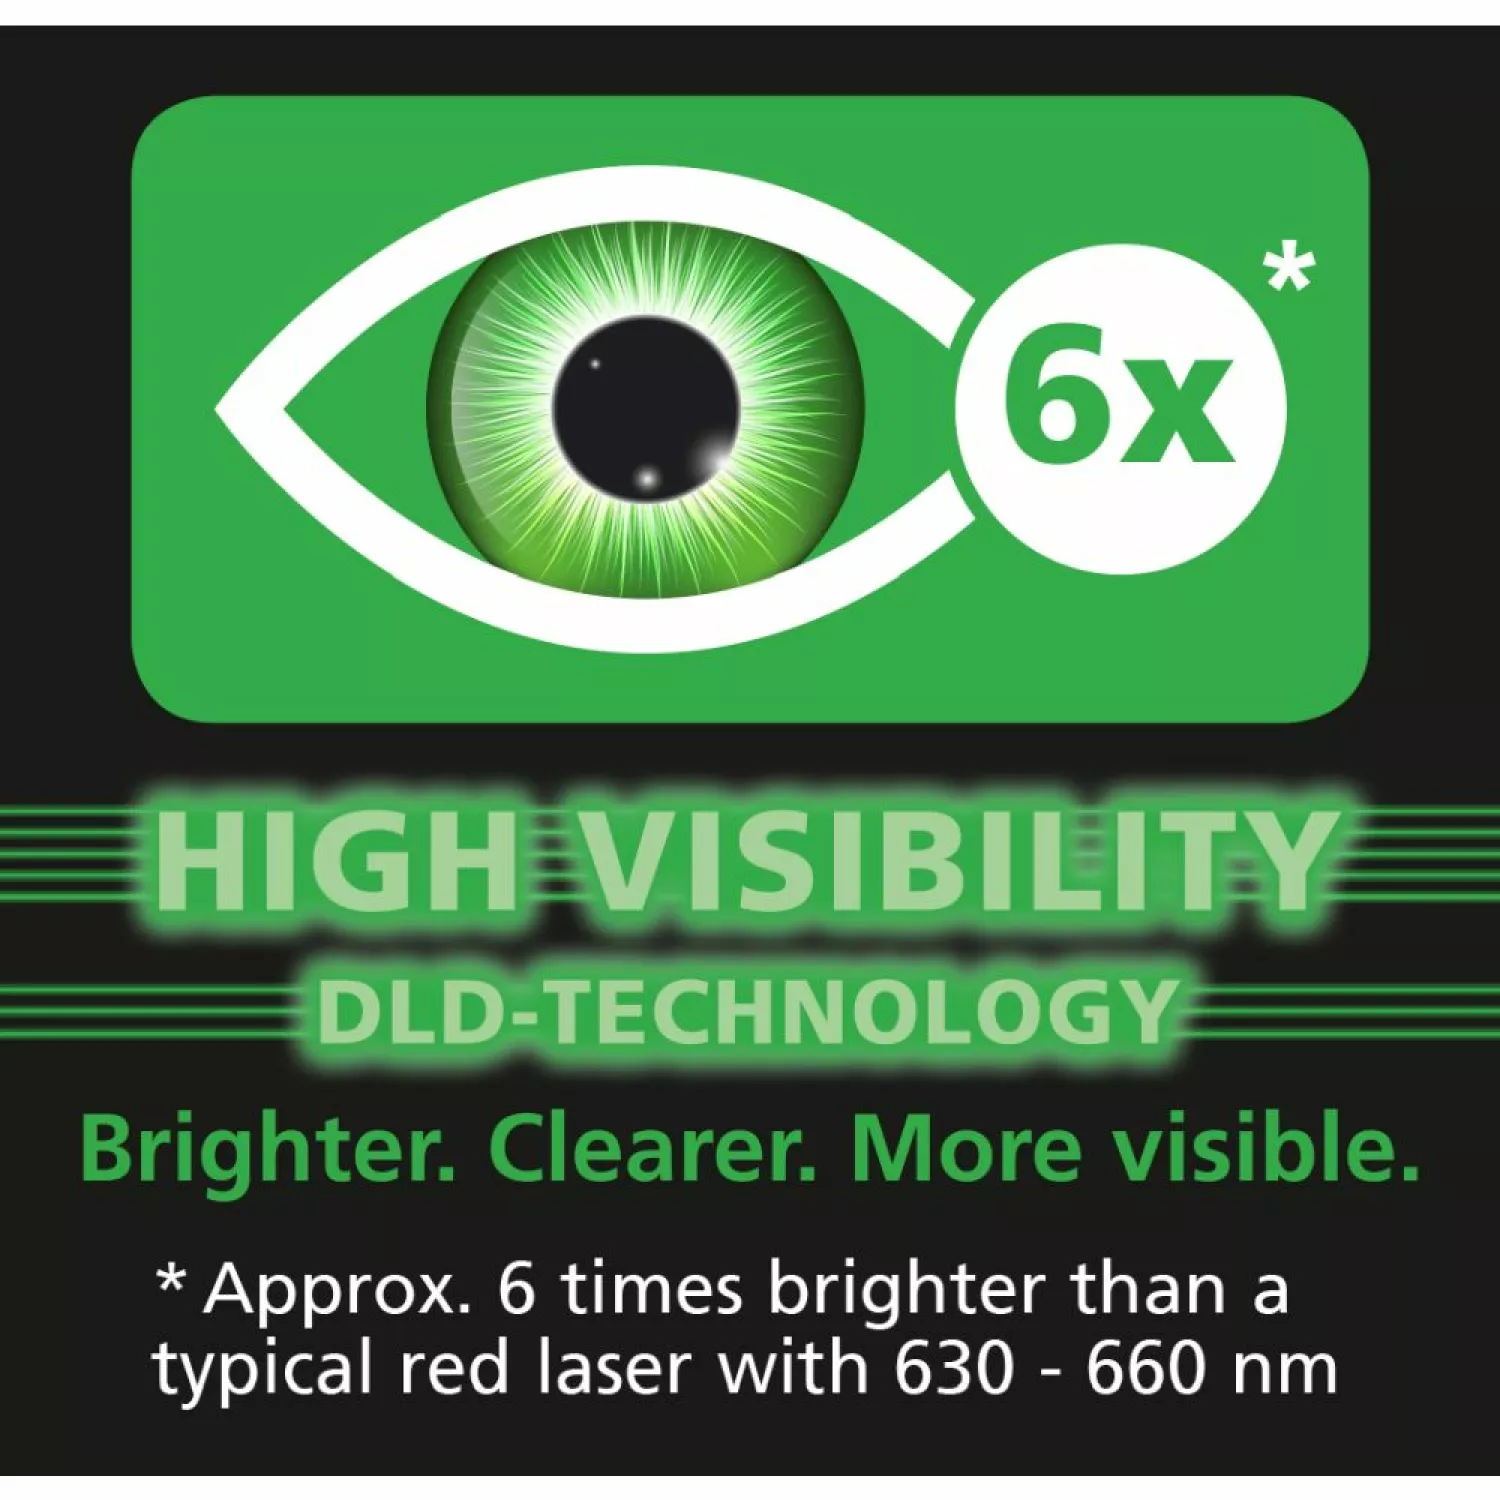 Laserliner LaserRange-Master Gi7 Pro Laserafstandsmeter - Groen - 70m-image